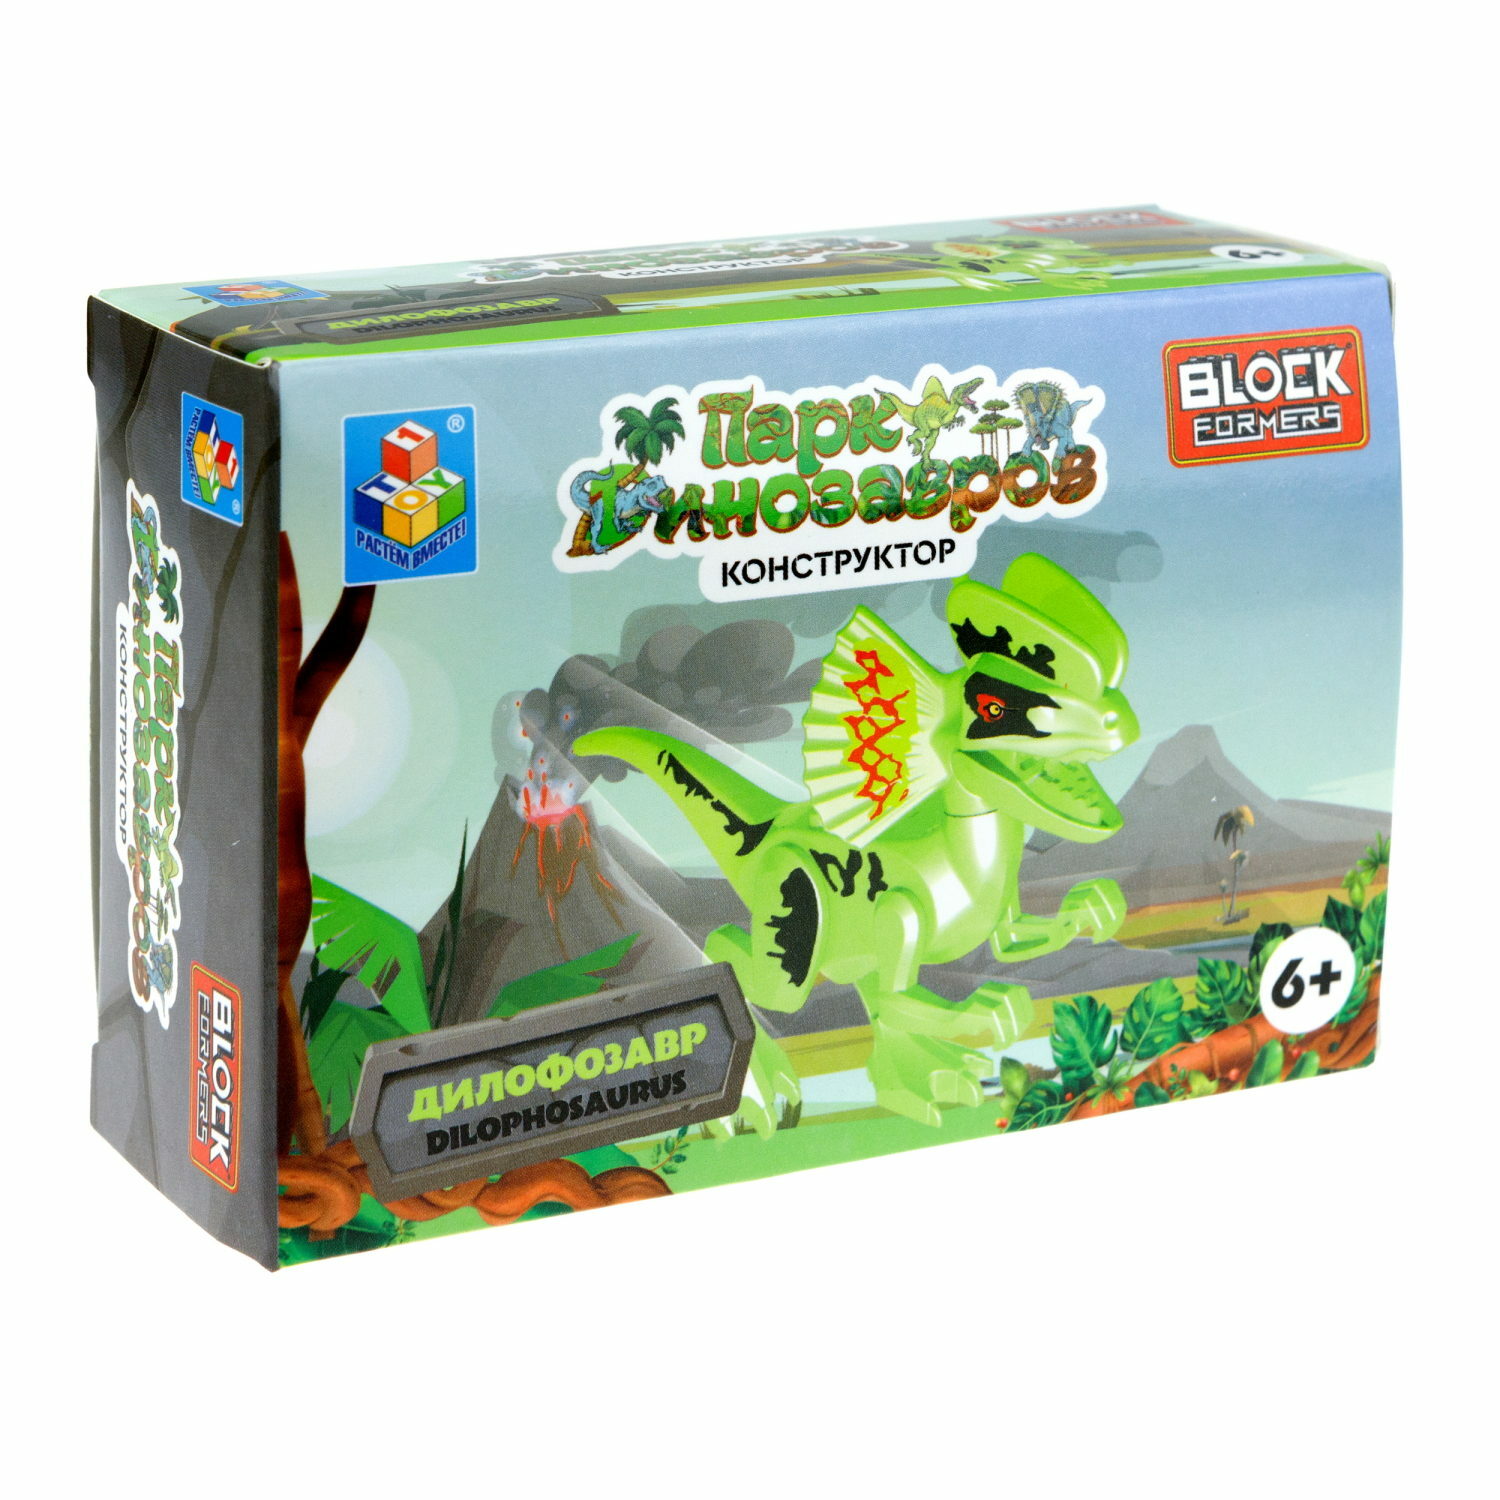 Игрушка сборная Blockformers 1Toy Парк динозавров Дилофозавр Т23229-4 - фото 8